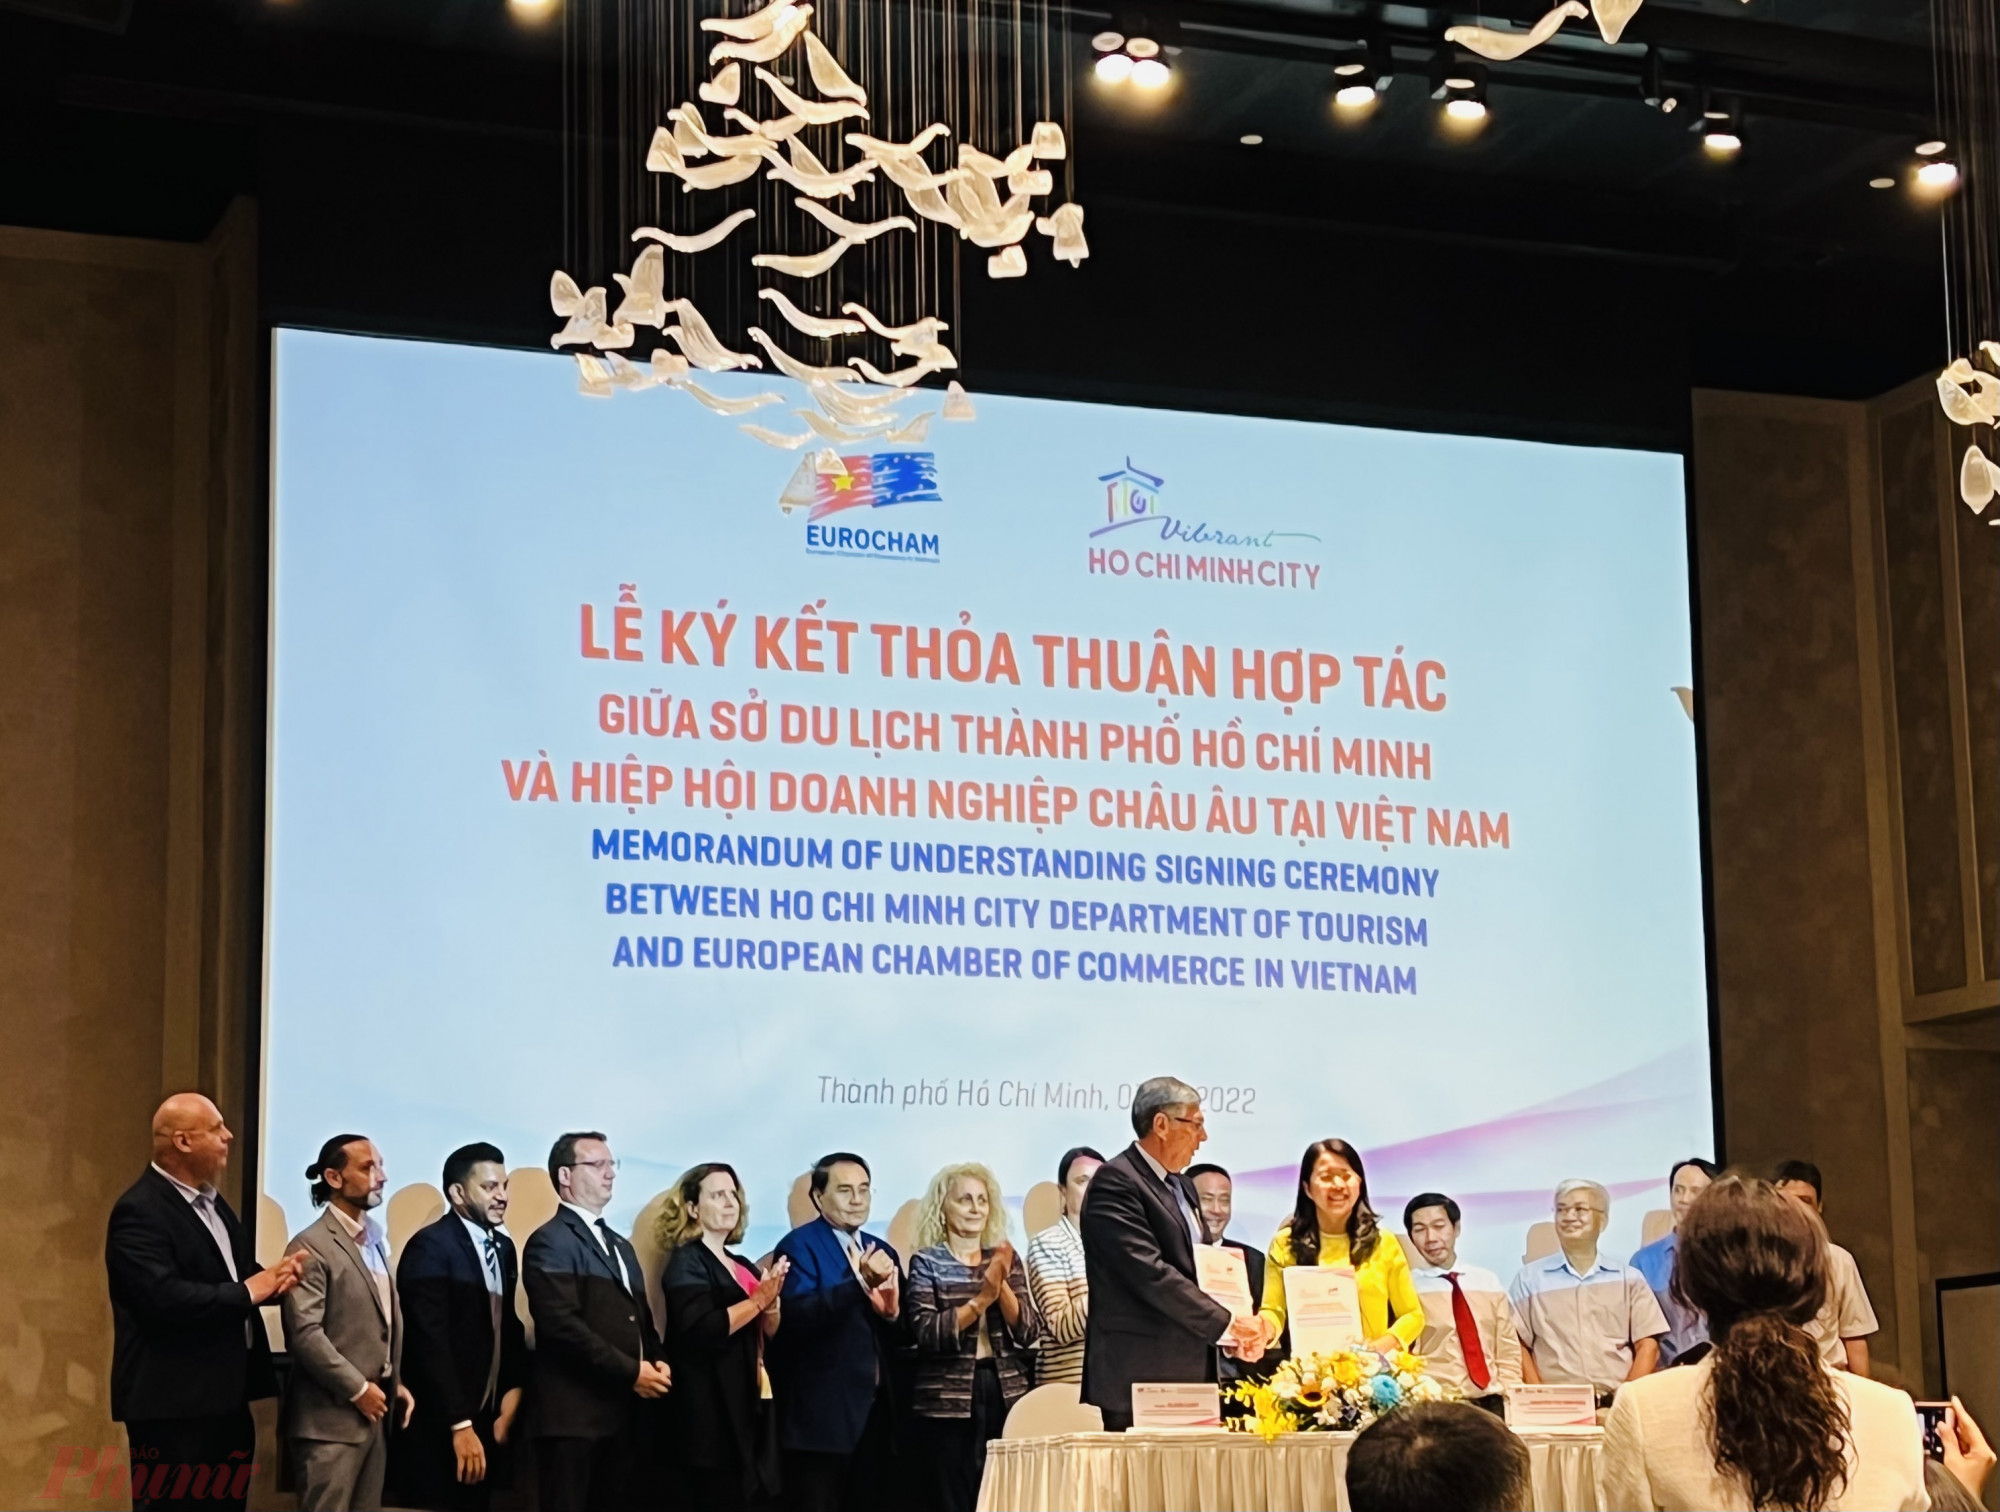 Buổi lễ ký kể giữa sở Du lịch TPHCM với Hiệp hội Doanh nghiệp châu Âu tại Việt Nam và VIS